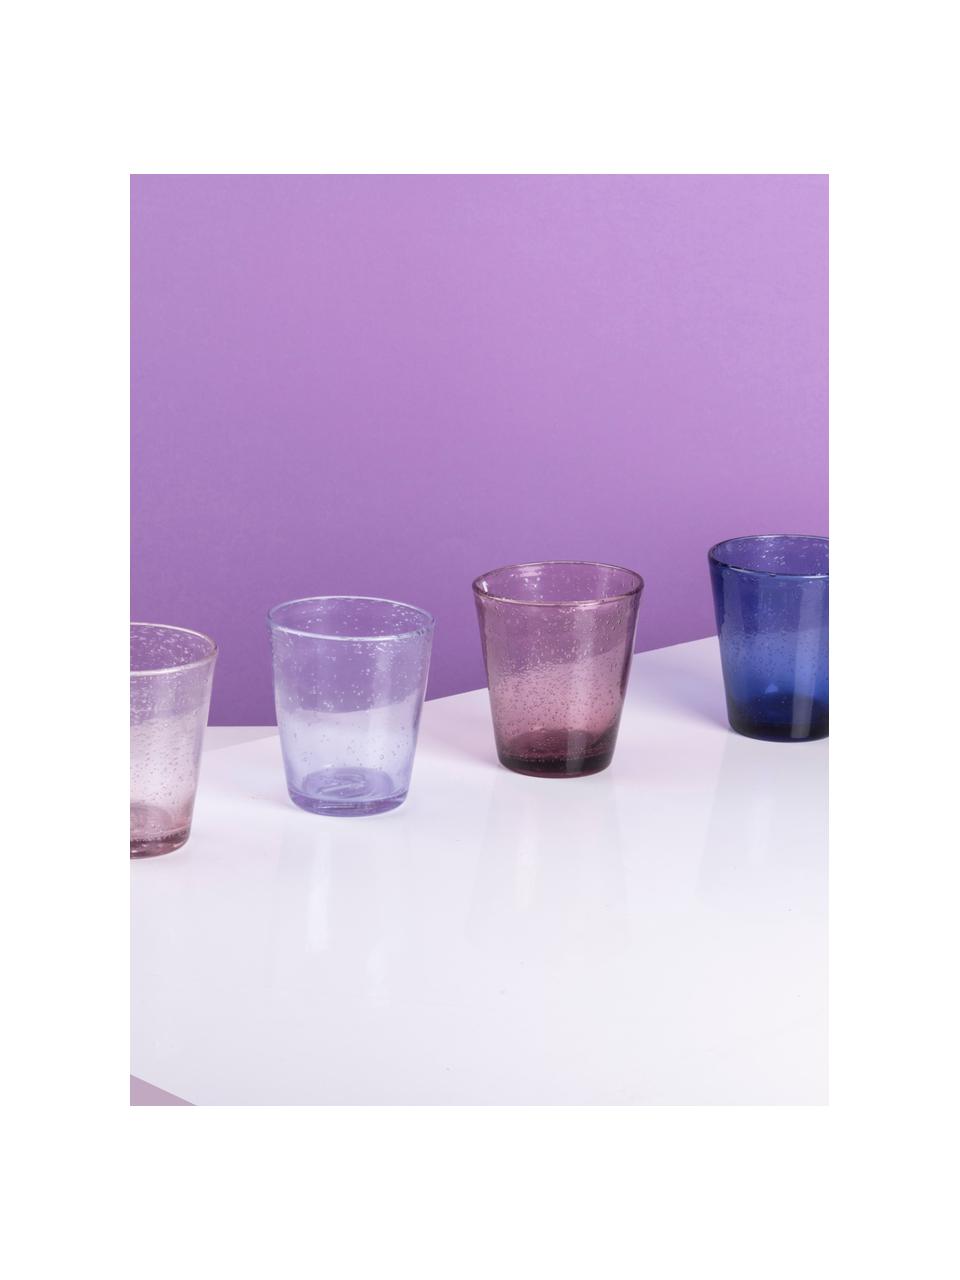 Sada sklenic na vodu s ozdobnými vzduchovými bublinkami Cancun, 6 dílů, Sklo, Odstíny fialová, Ø 9 cm, V 10 cm, 330 ml